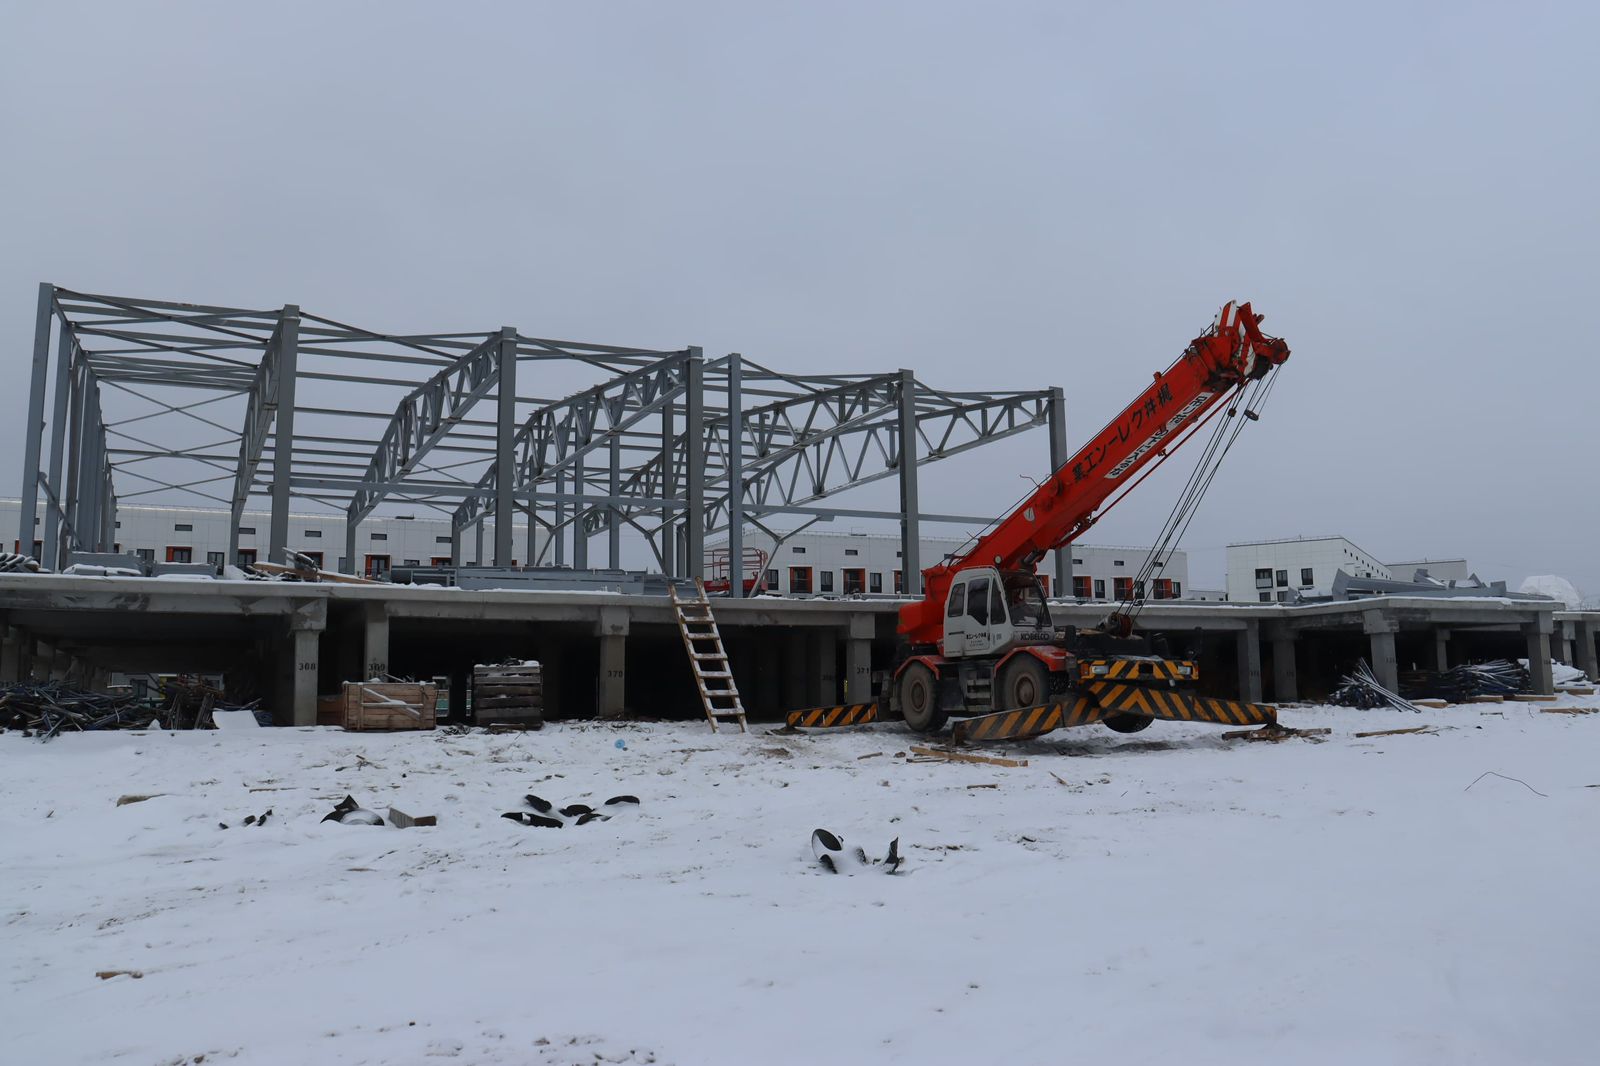 Строительство крытого катка ведется в Якутске